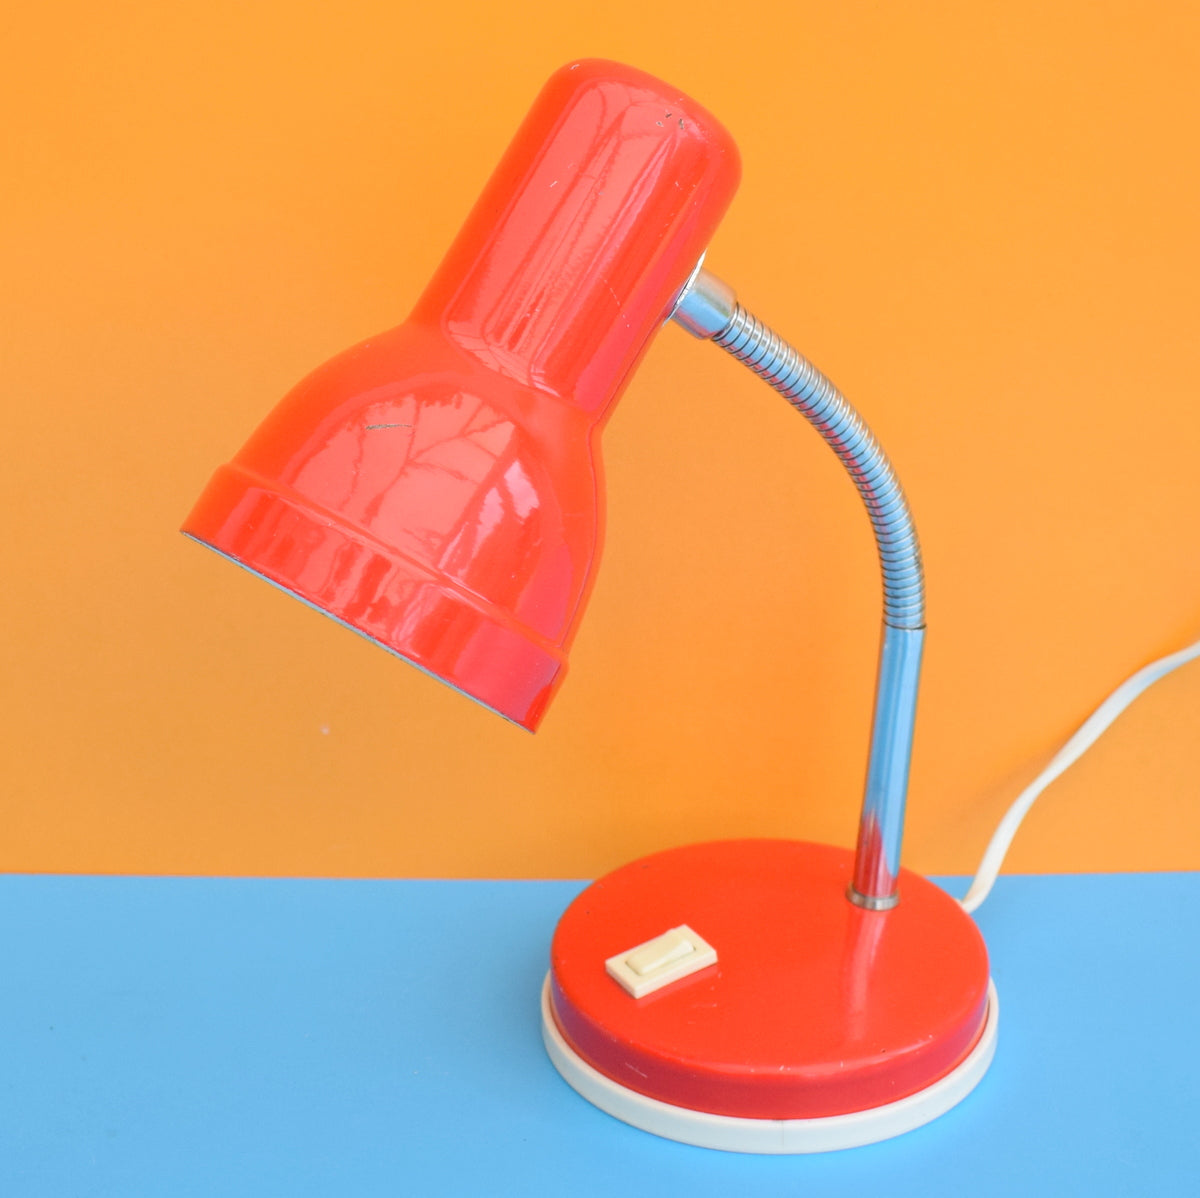 Vintage 1970s Gooseneck Desk Lamp - Red